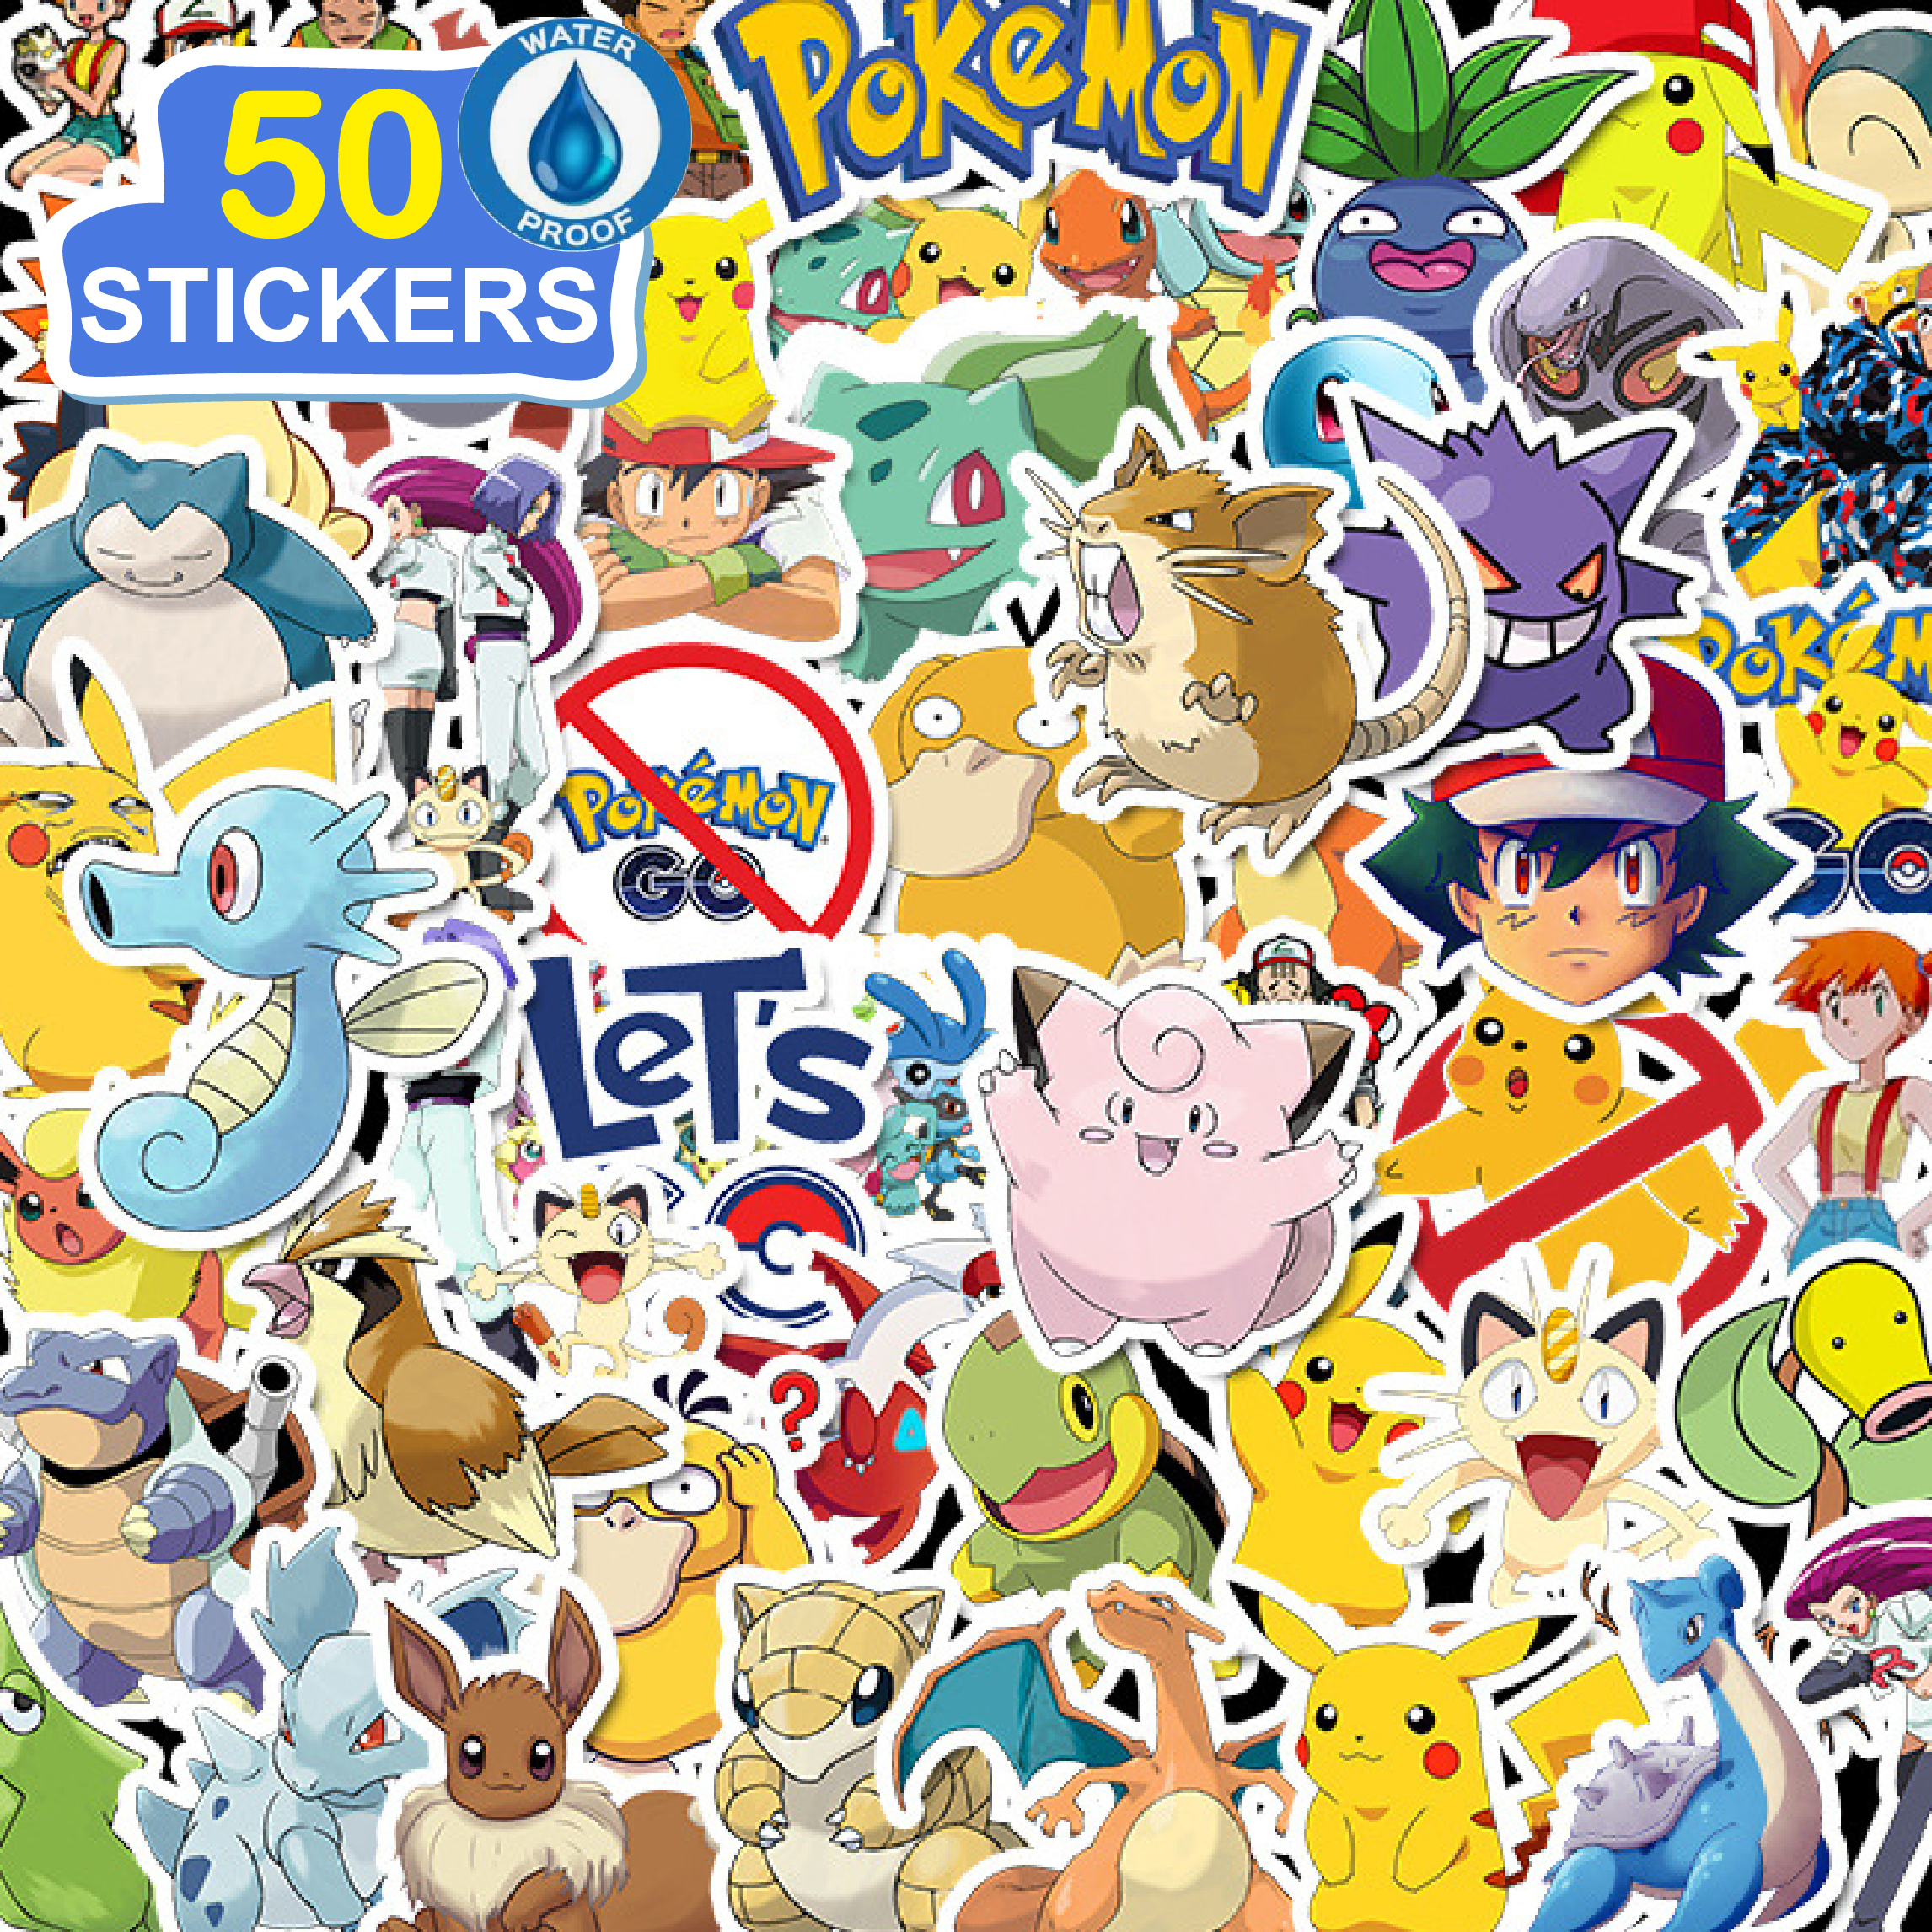 50 Stickers hoạt hình Pokemon hình dán dễ thương trang trí laptop, điện thoại, ipad, cốc nước, sổ tay, vali du lịch, scooter, ván trược - Chống thấm nước - FiDi